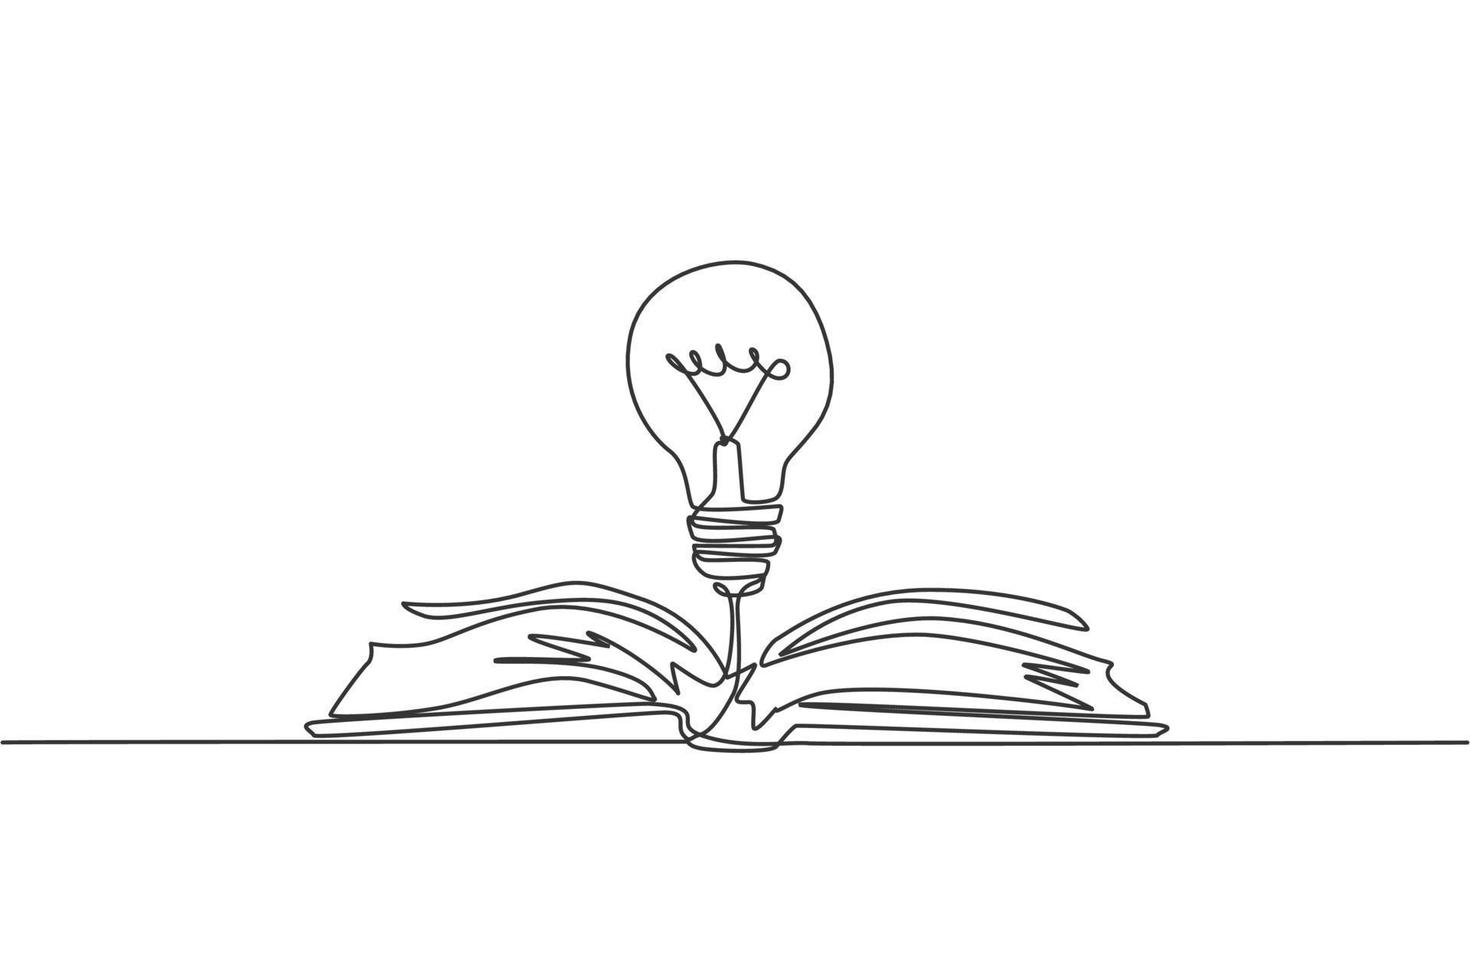 un disegno a tratteggio di una lampadina brillante sopra l'identità del logo del libro di testo aperto. concetto di modello dell'icona del logotipo del club di studio della conoscenza. illustrazione vettoriale grafica di disegno di disegno di linea continua dinamica